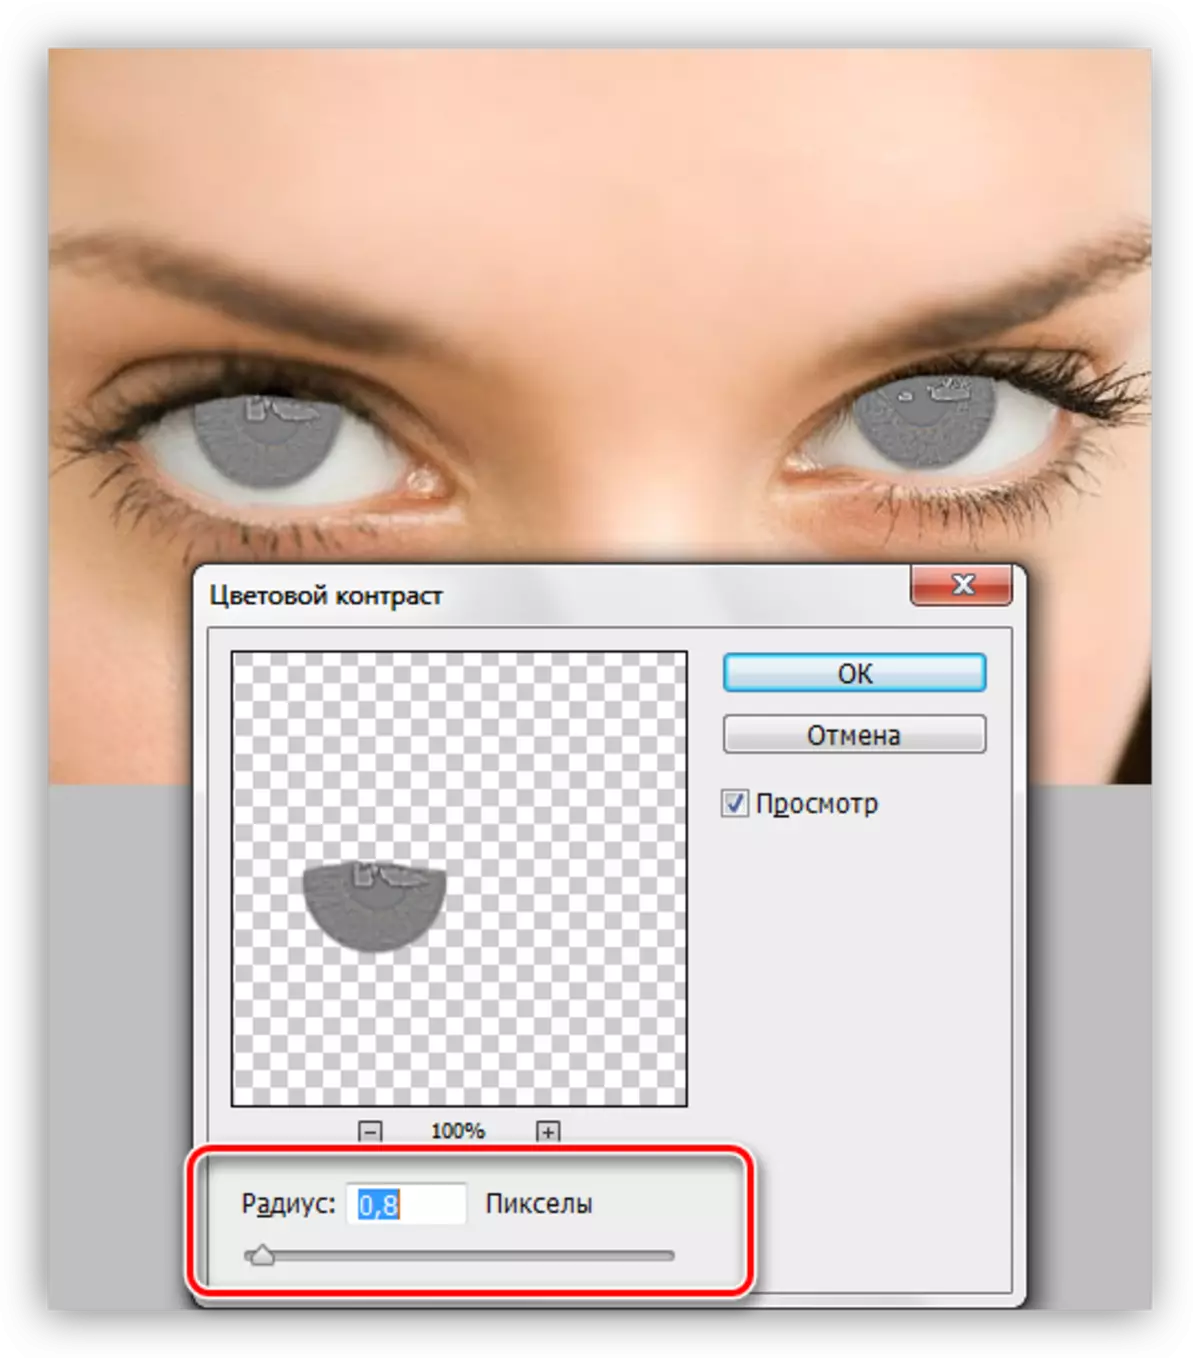 फोटोशॉपमध्ये डोळा निवडताना तीक्ष्णता वाढविण्यासाठी फिल्टर रंग कॉन्ट्रास्ट सेट करणे